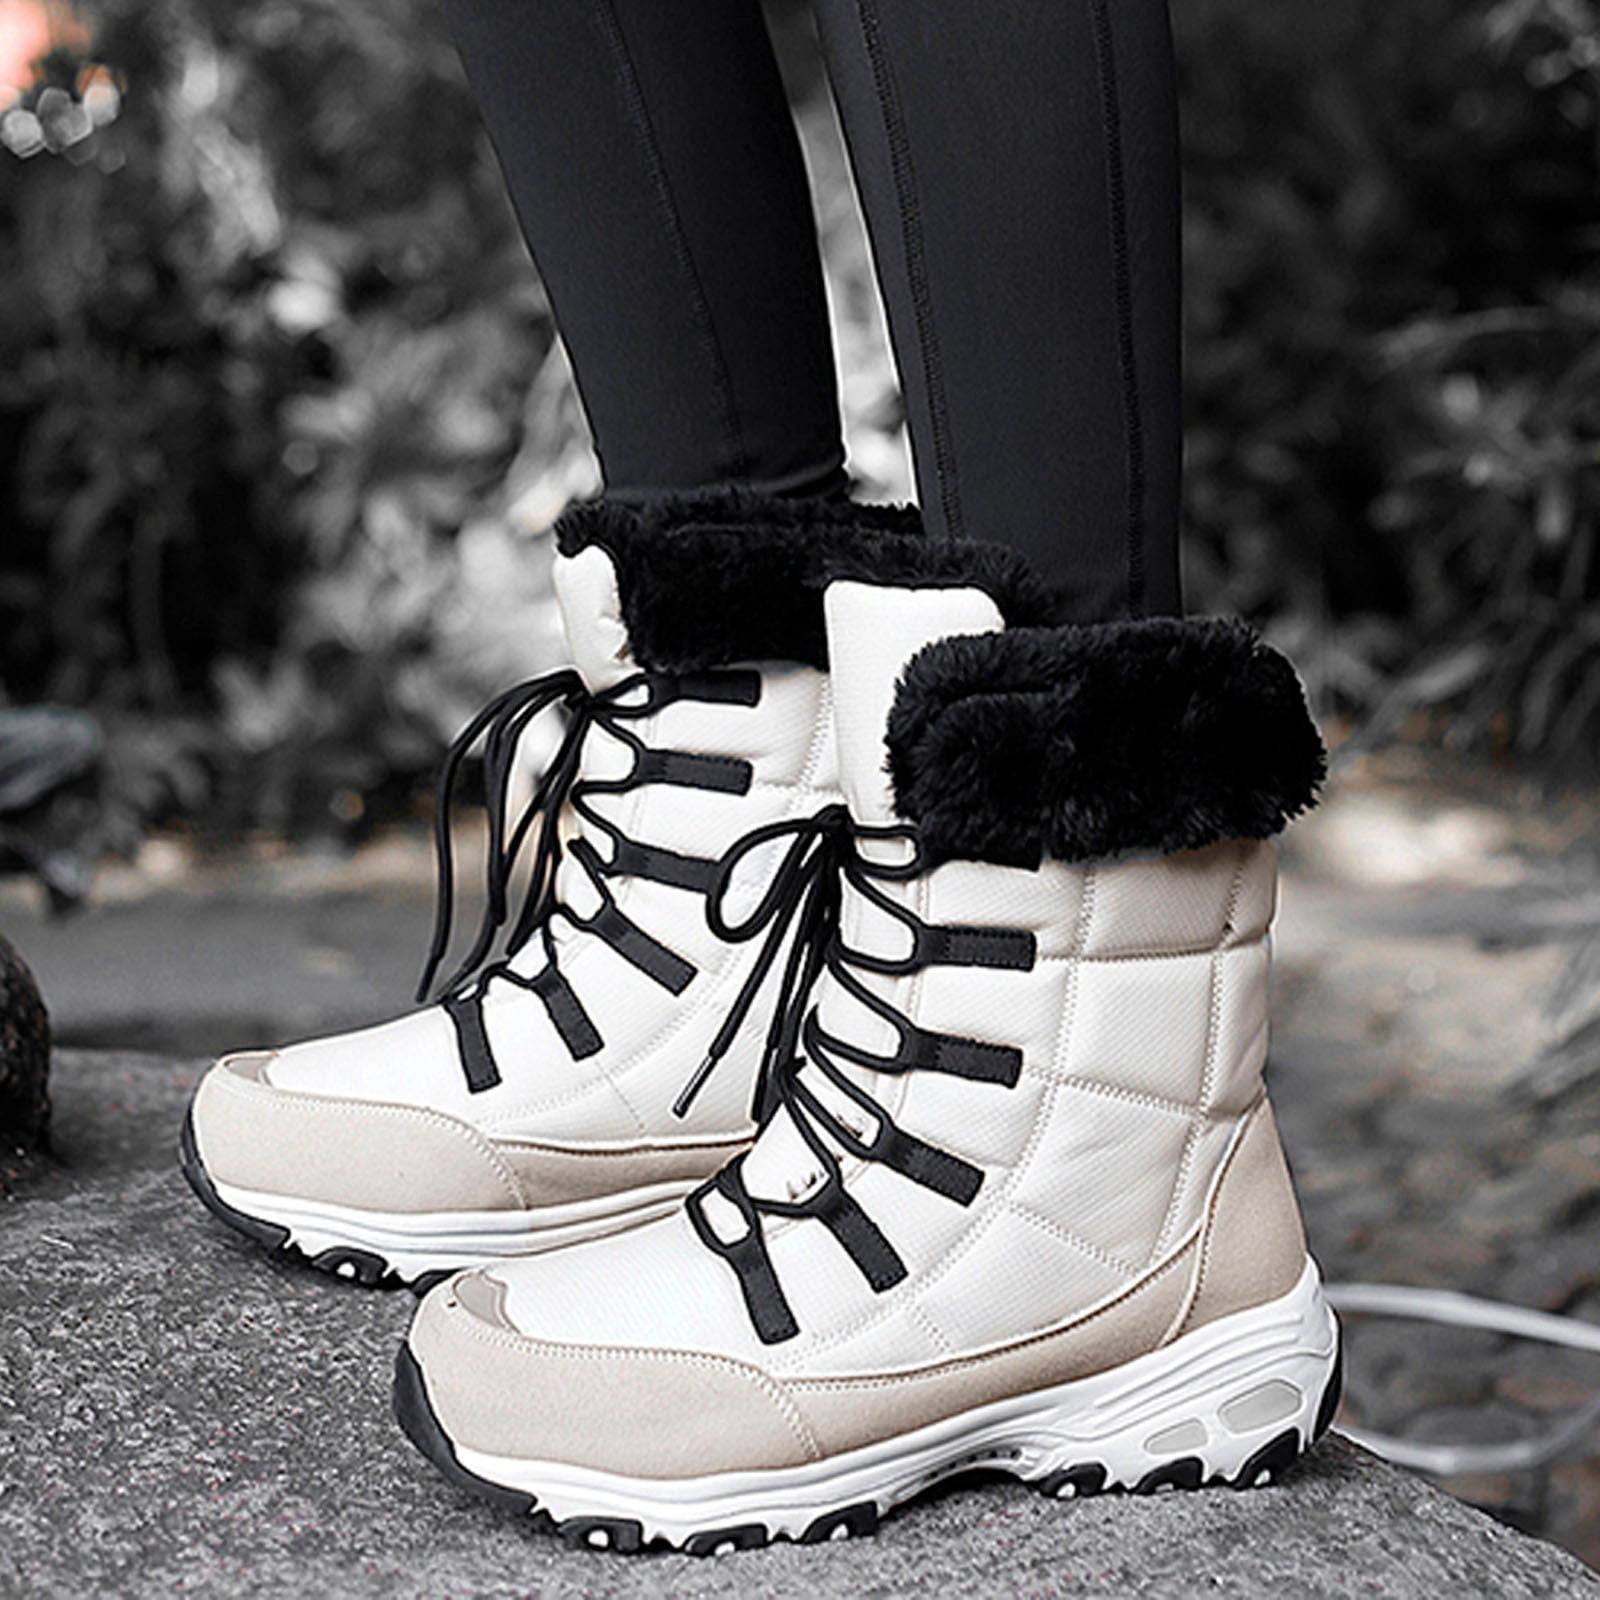 women’s winter dress boots